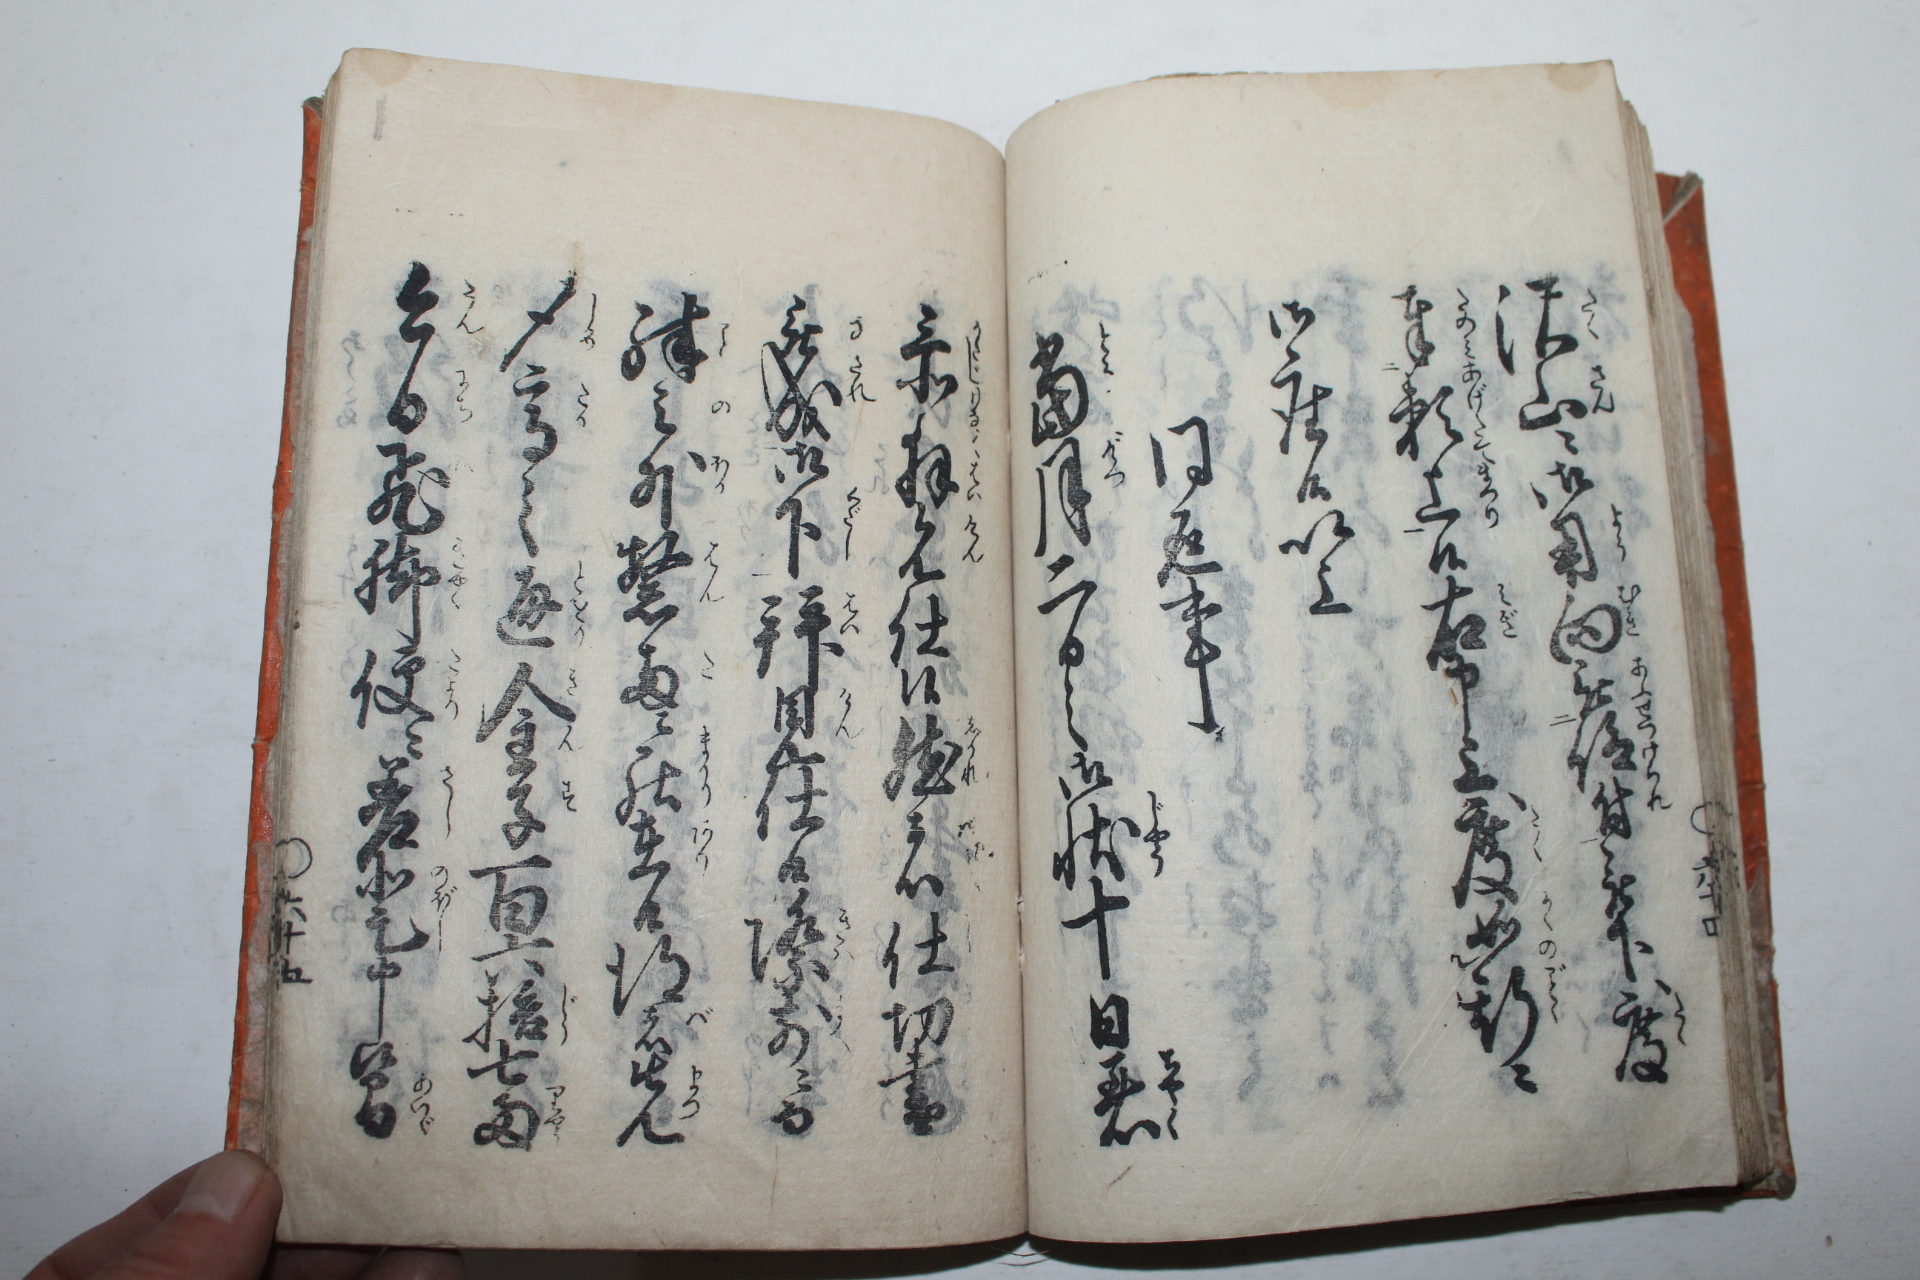 1847년(弘化3年) 일본목판본 일대주문장(一代周文章) 1책완질